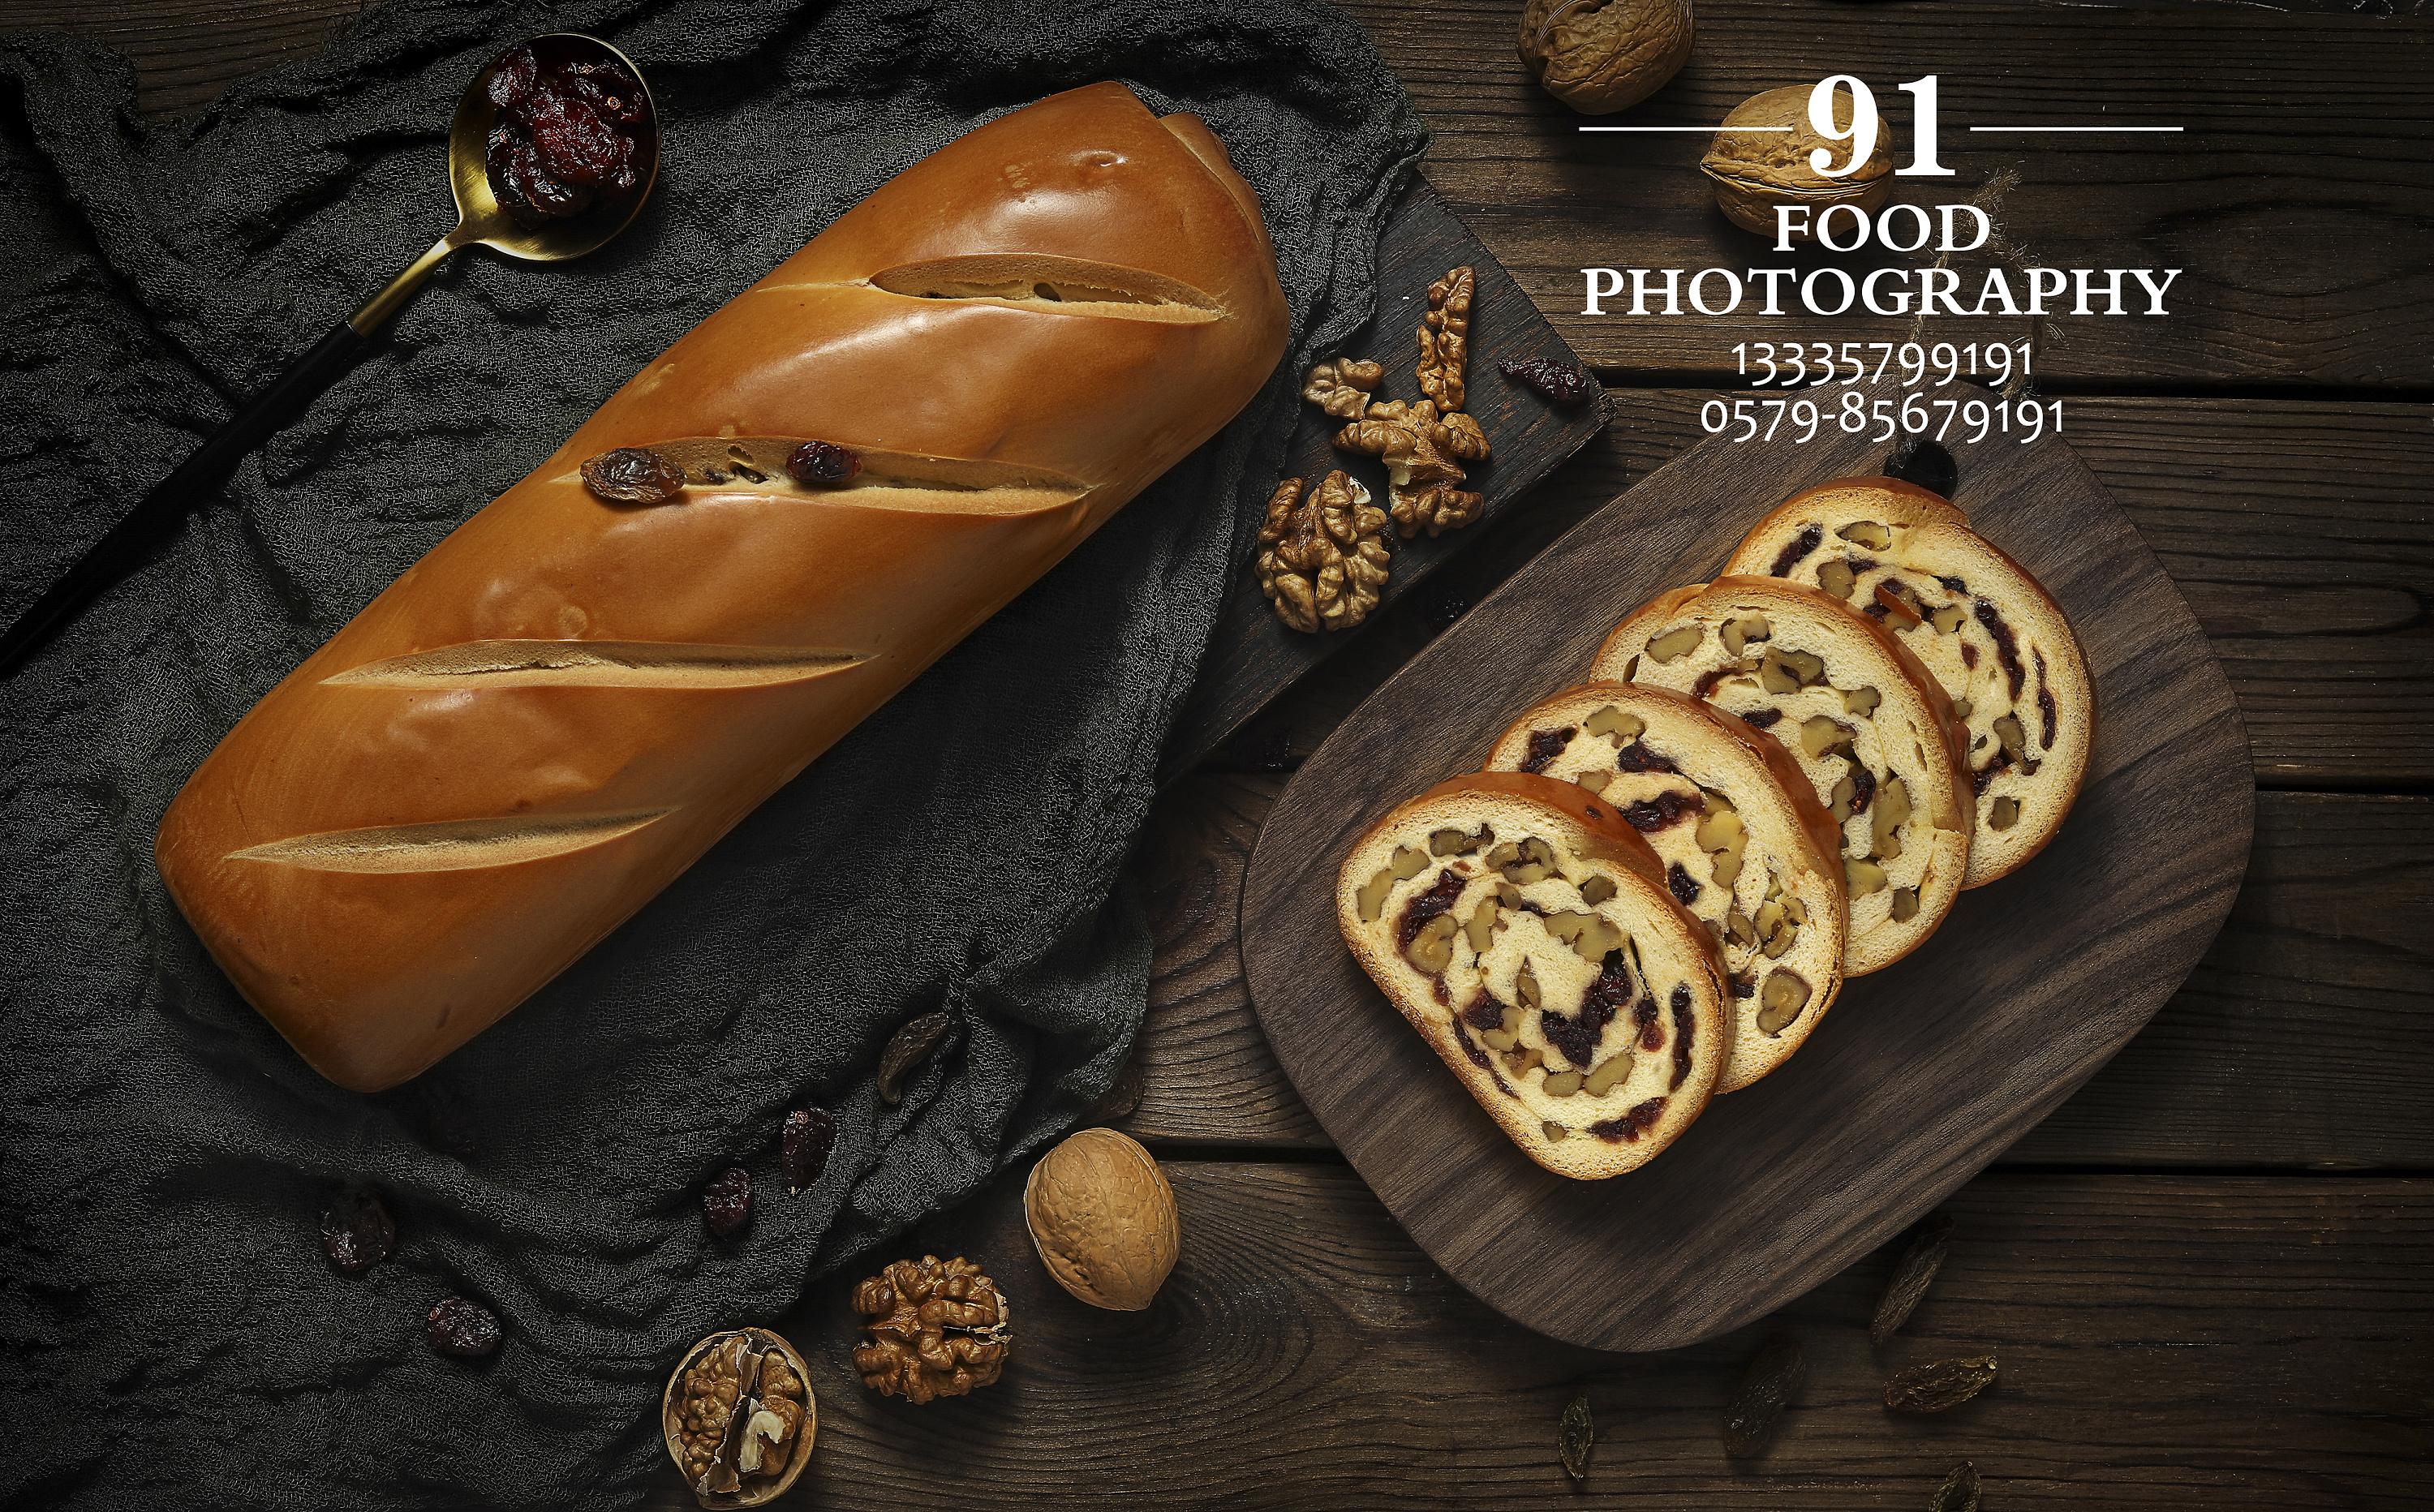 大列巴 大面包 美食摄影 来自面包的诱惑